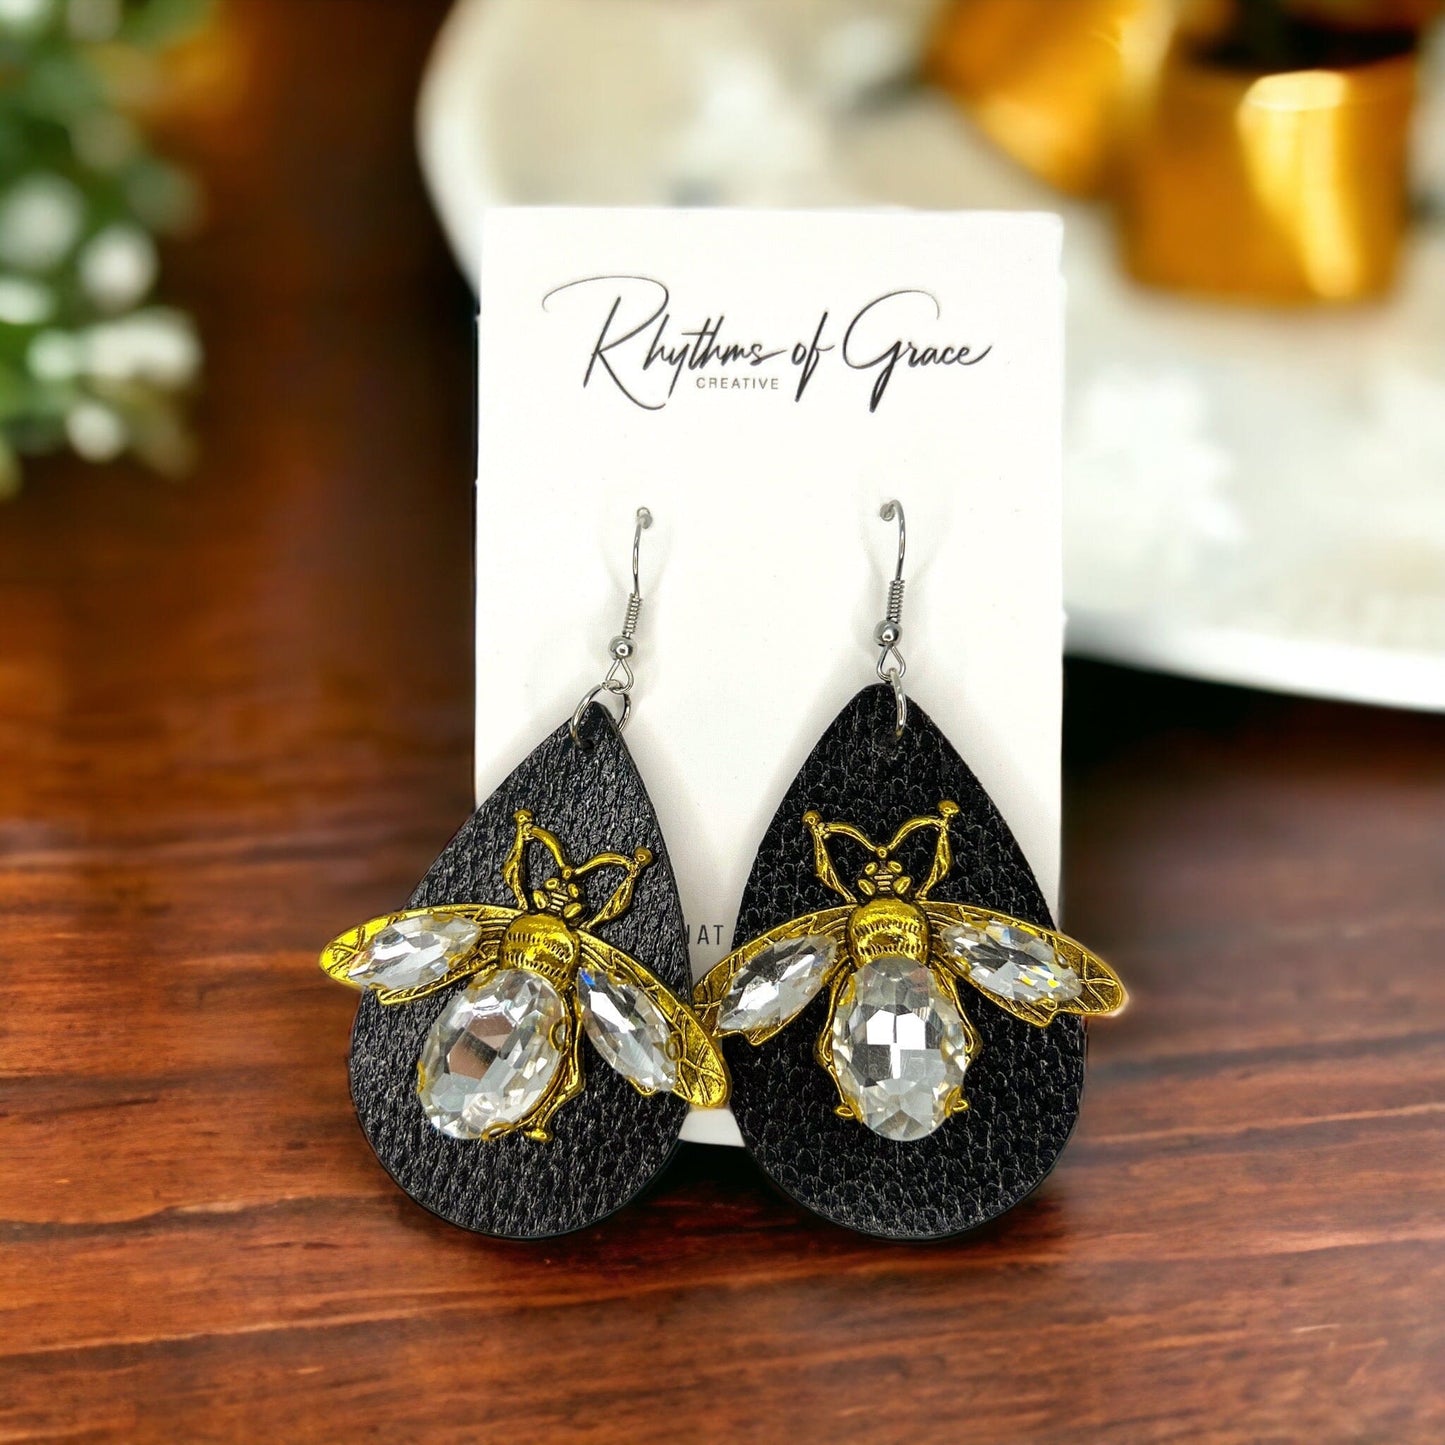 Rhinestone Bee Earrings - Honeybee Earrings, Bumblebee Earrings Black Earrings, Bee Mine, Black and Gold Earrings, Rhinestone Earrings, Bead